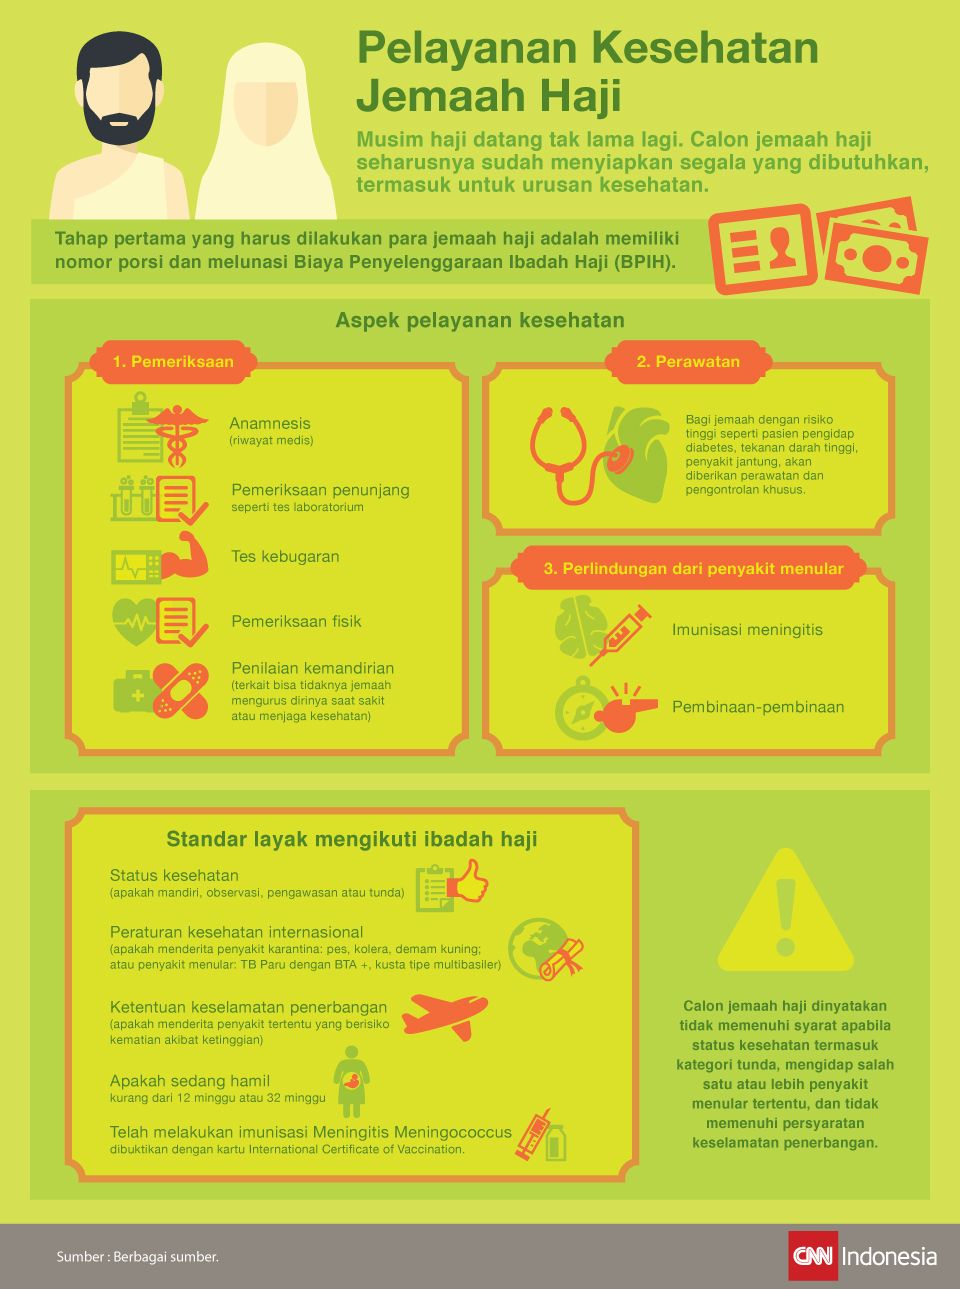 Infografis mengenai persiapan calon jemaah haji, terutama seputar kesehatan.